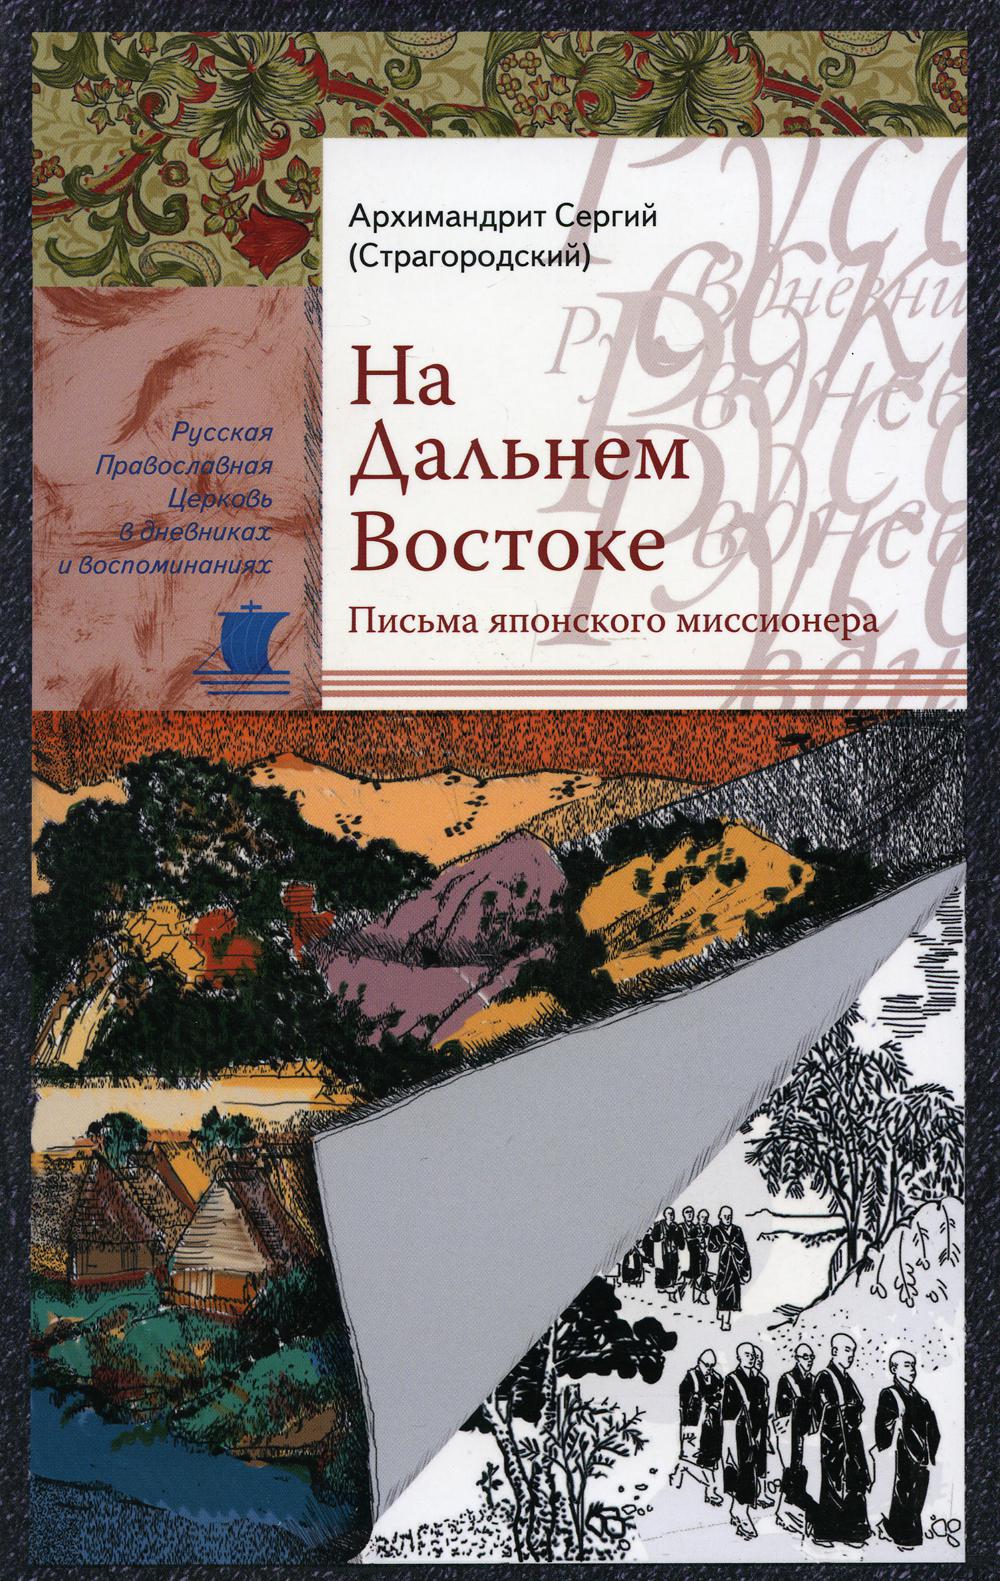 фото Книга на дальнем востоке сретенский монастырь